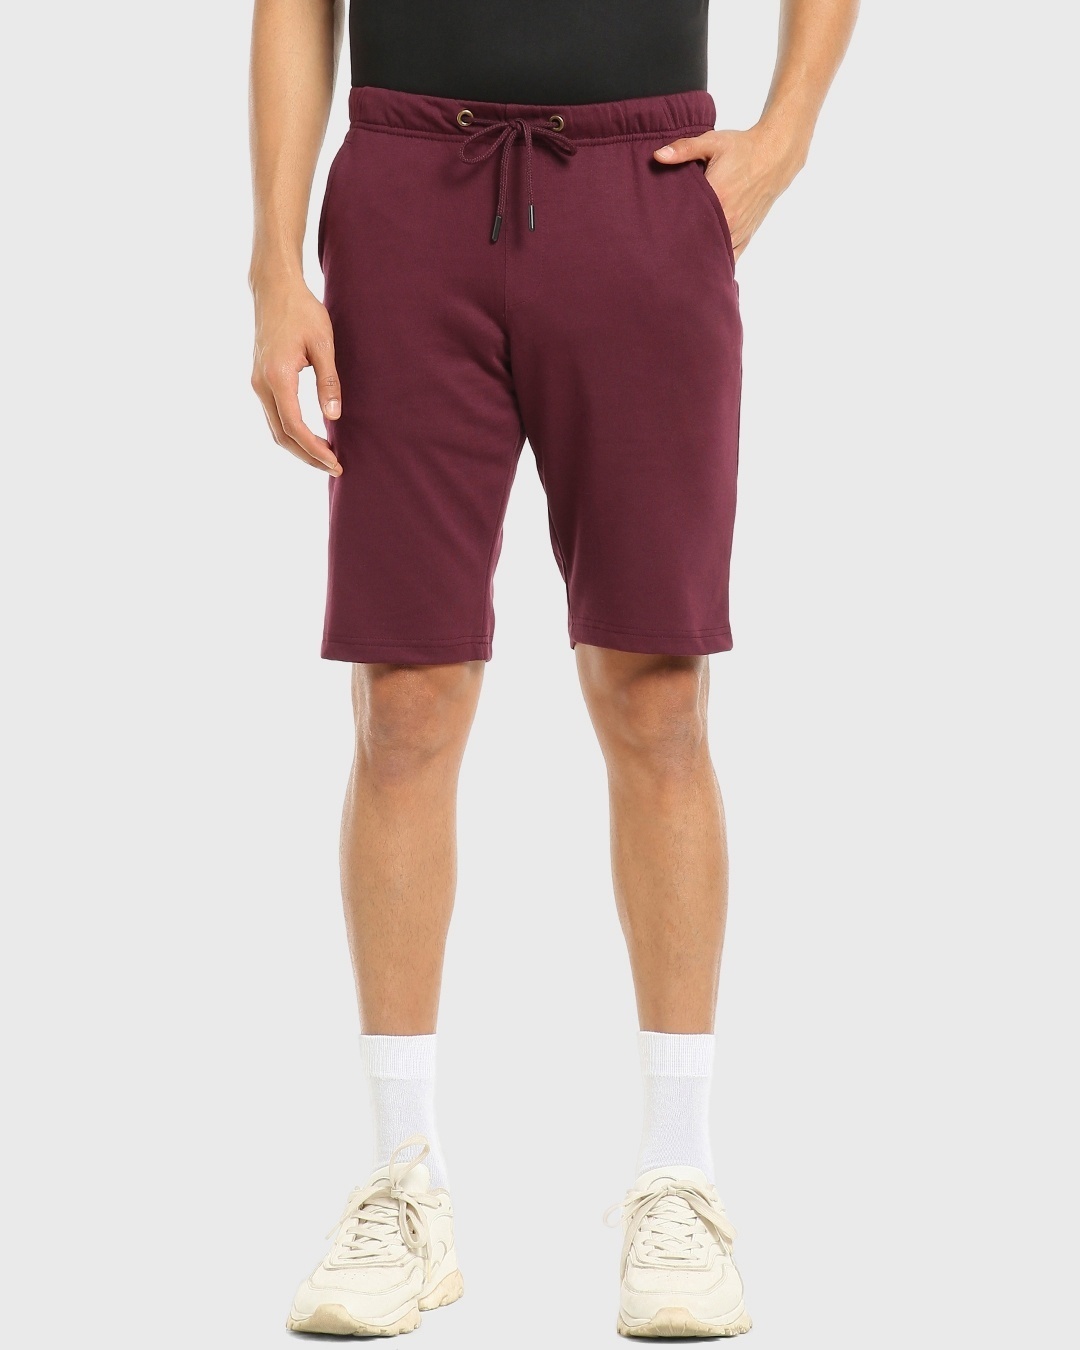 Buy Men's Burgundy Shorts for Men maroon Online at Bewakoof